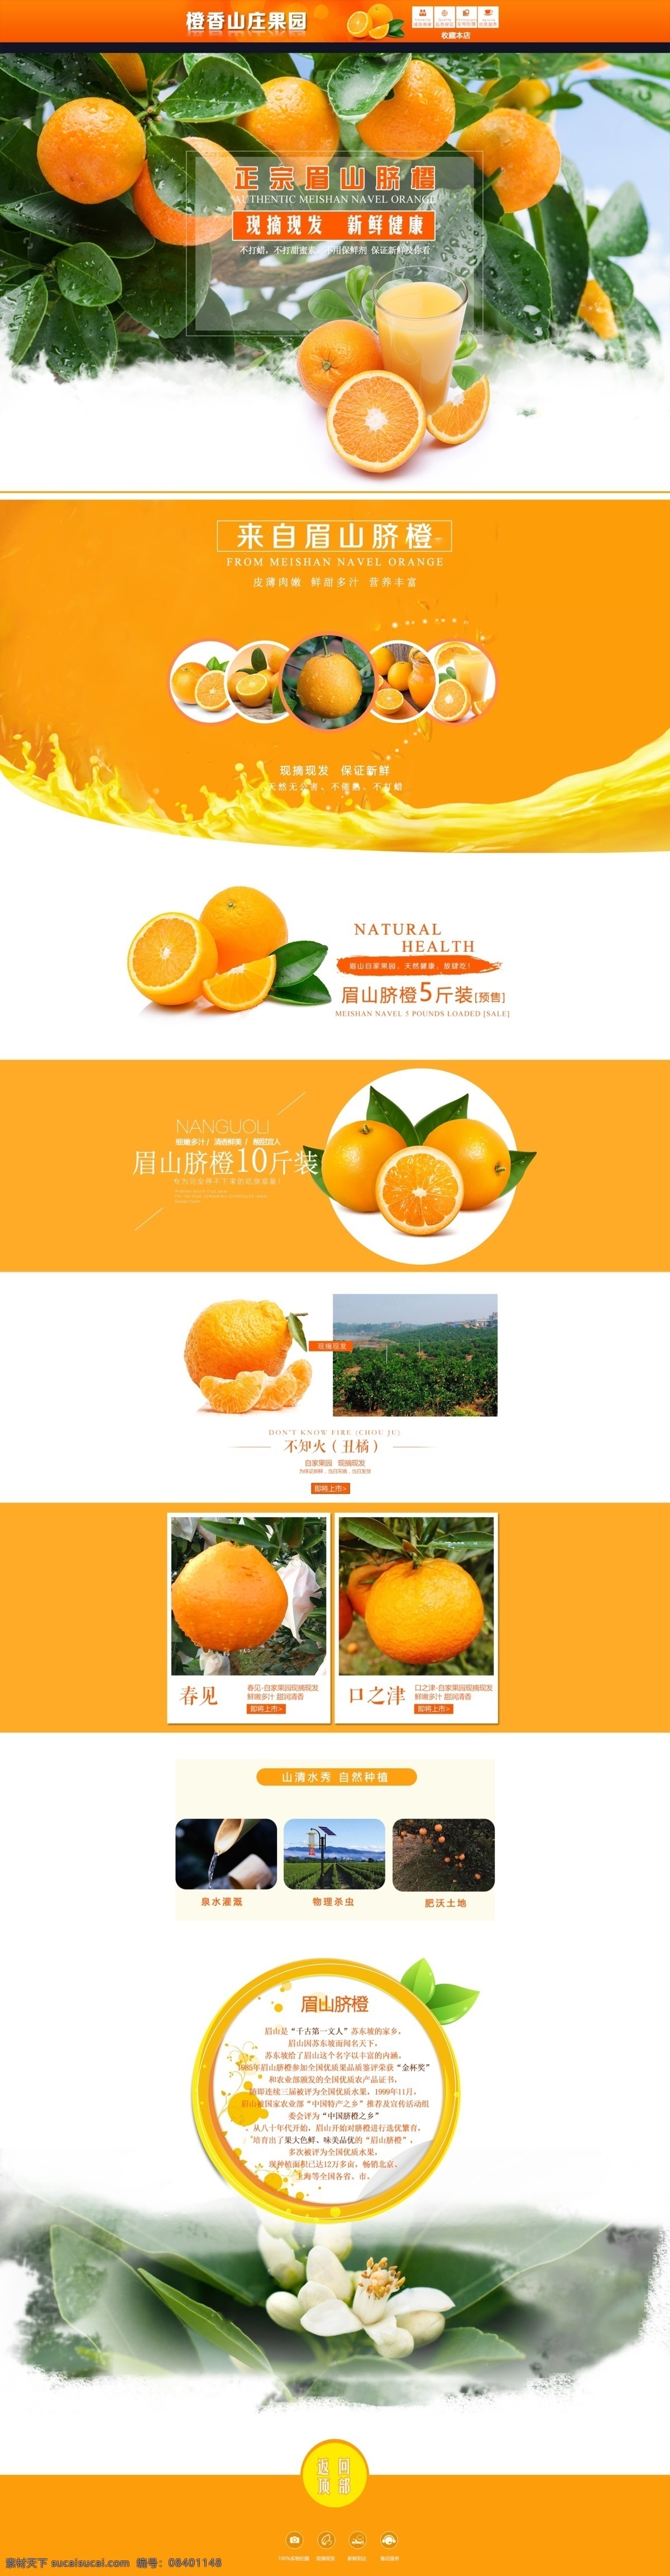 脐橙 首页 淘宝 电商 水果 橘子 新鲜 橙色 绿色